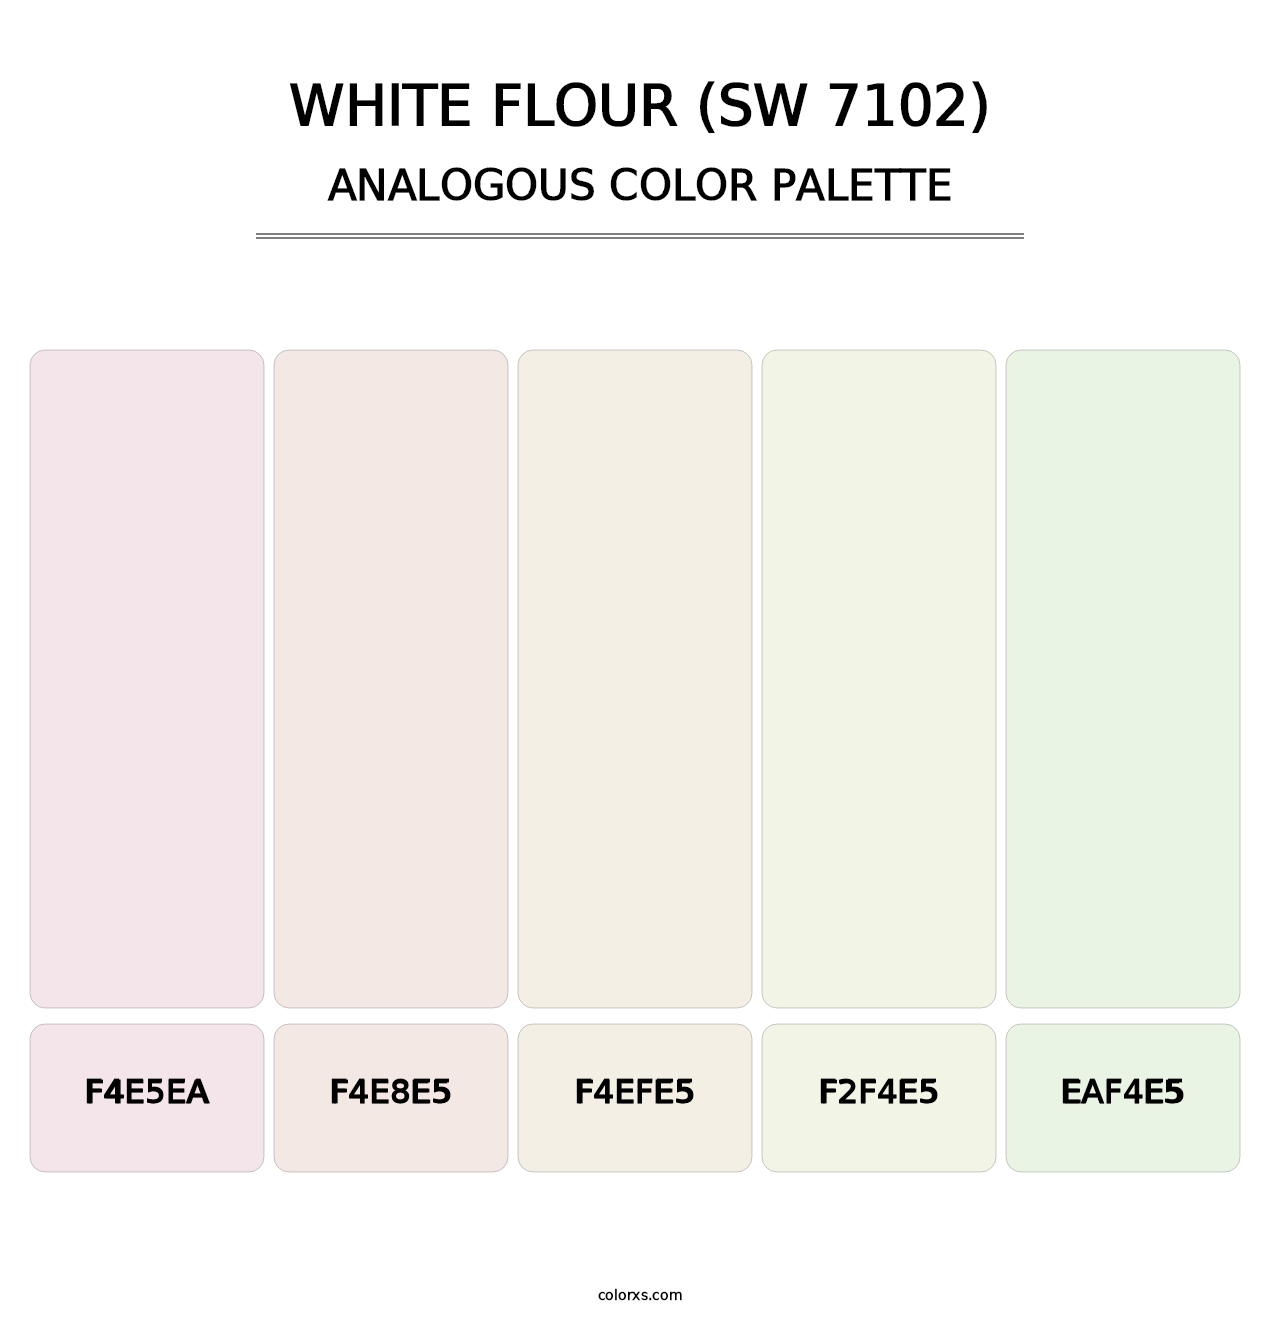 White Flour (SW 7102) - Analogous Color Palette